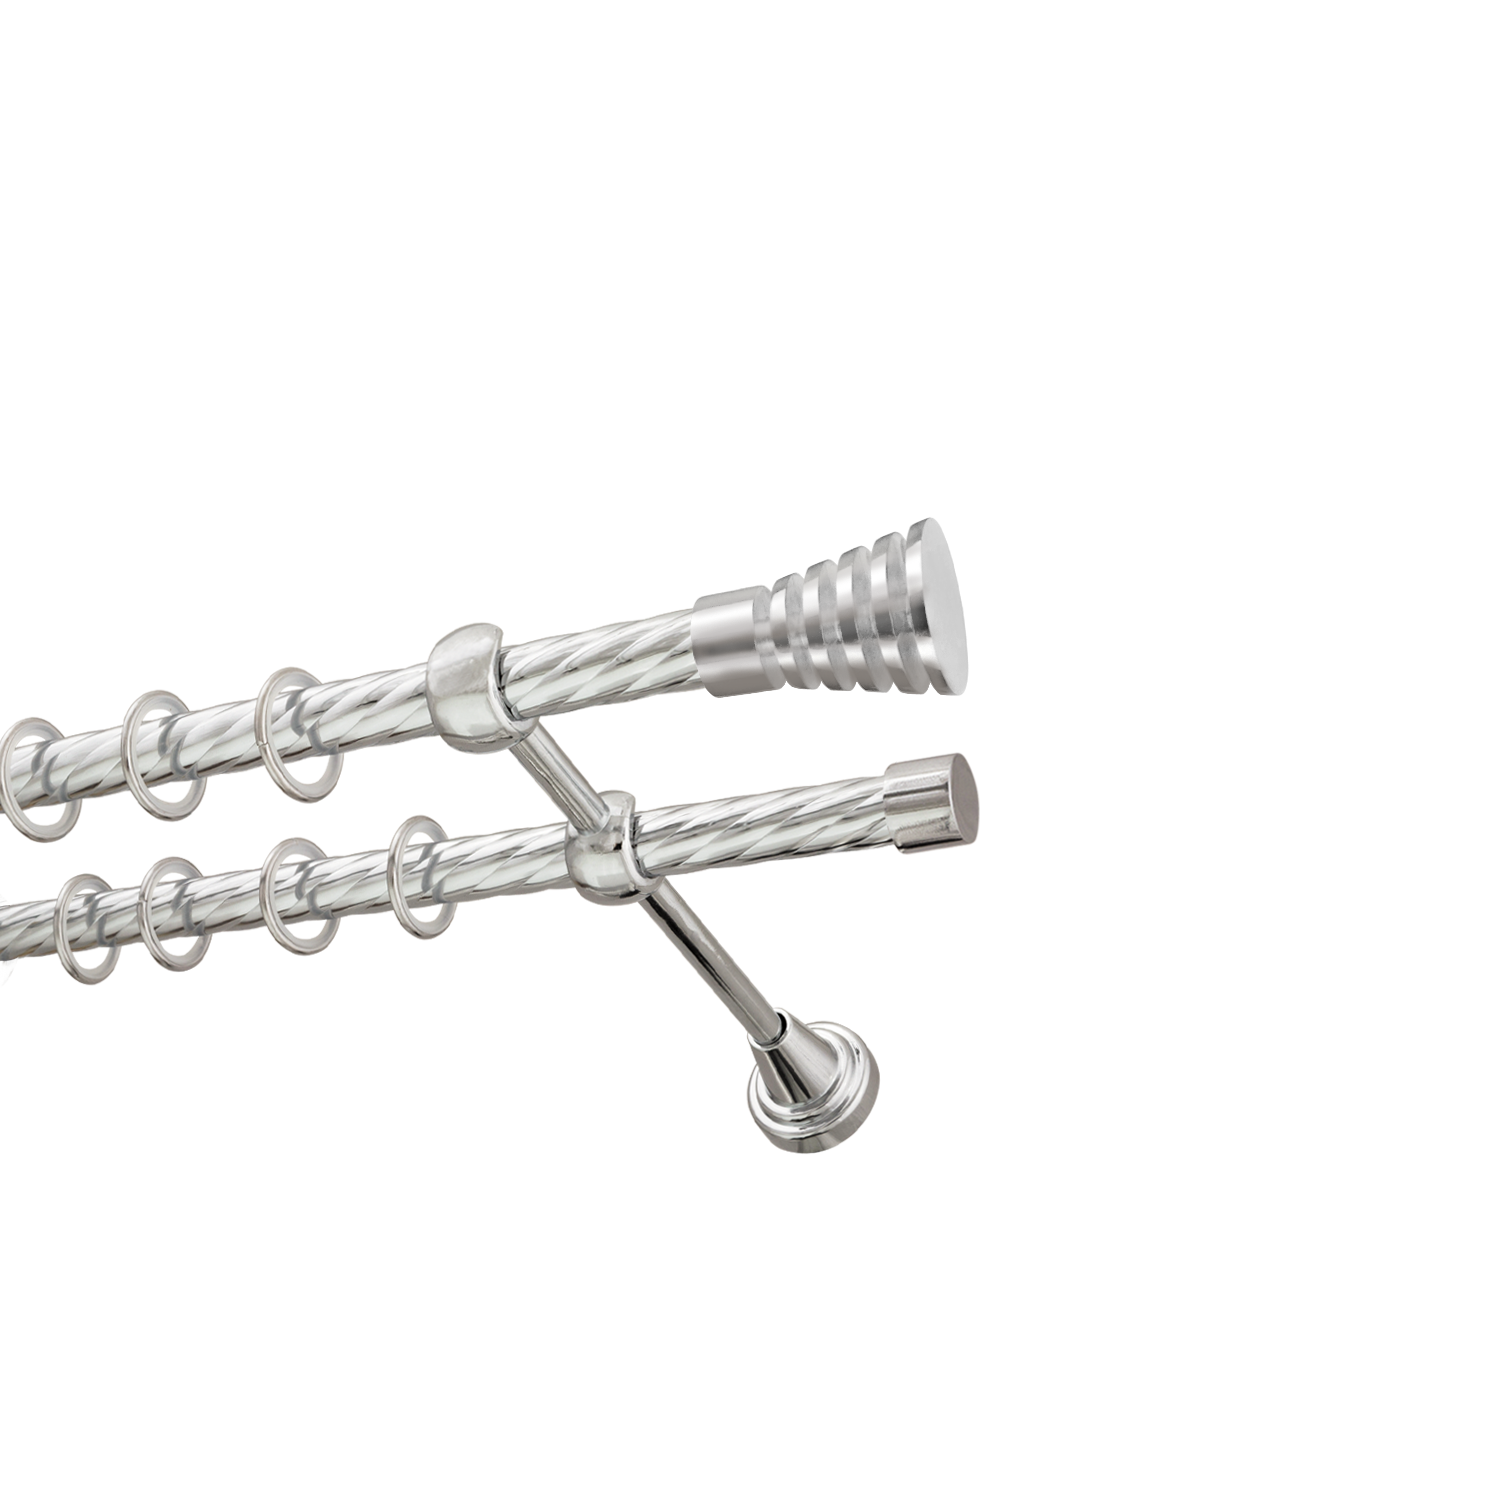 Металлический карниз для штор Верона, двухрядный 16/16 мм, серебро, витая штанга, длина 300 см